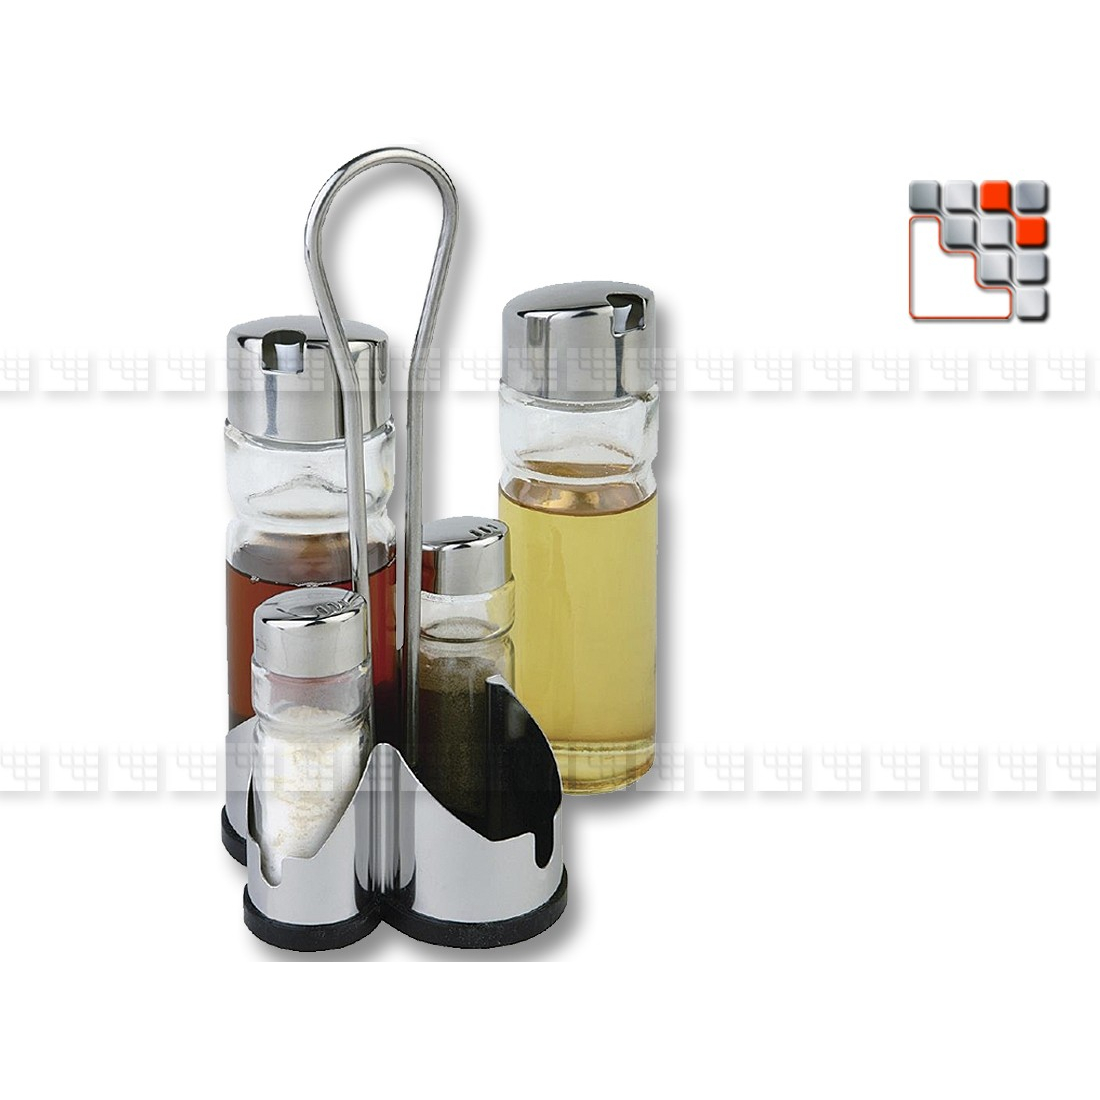 Oil-Vinegar-Pepper-Salt Set TIENDA A17-124 A la Plancha® Tableware